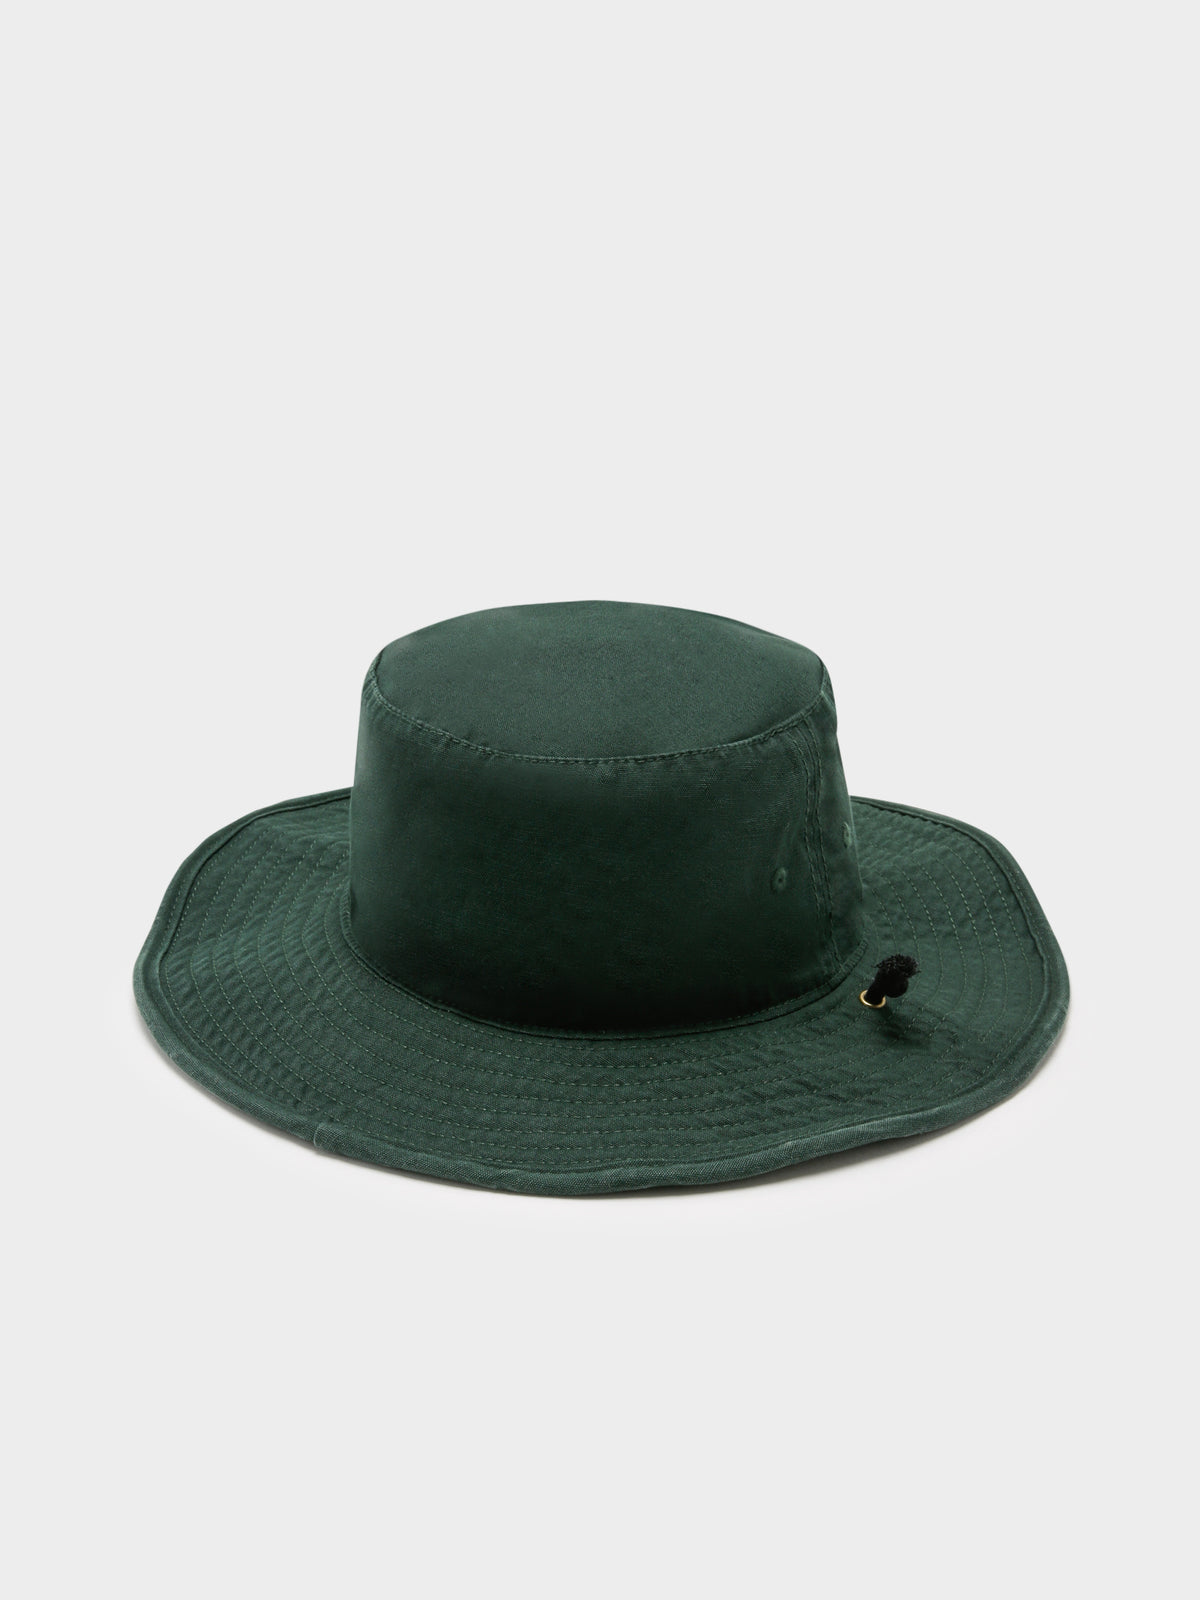 Yellowstone Wide Brimmed Bucket Hat in Dark Green